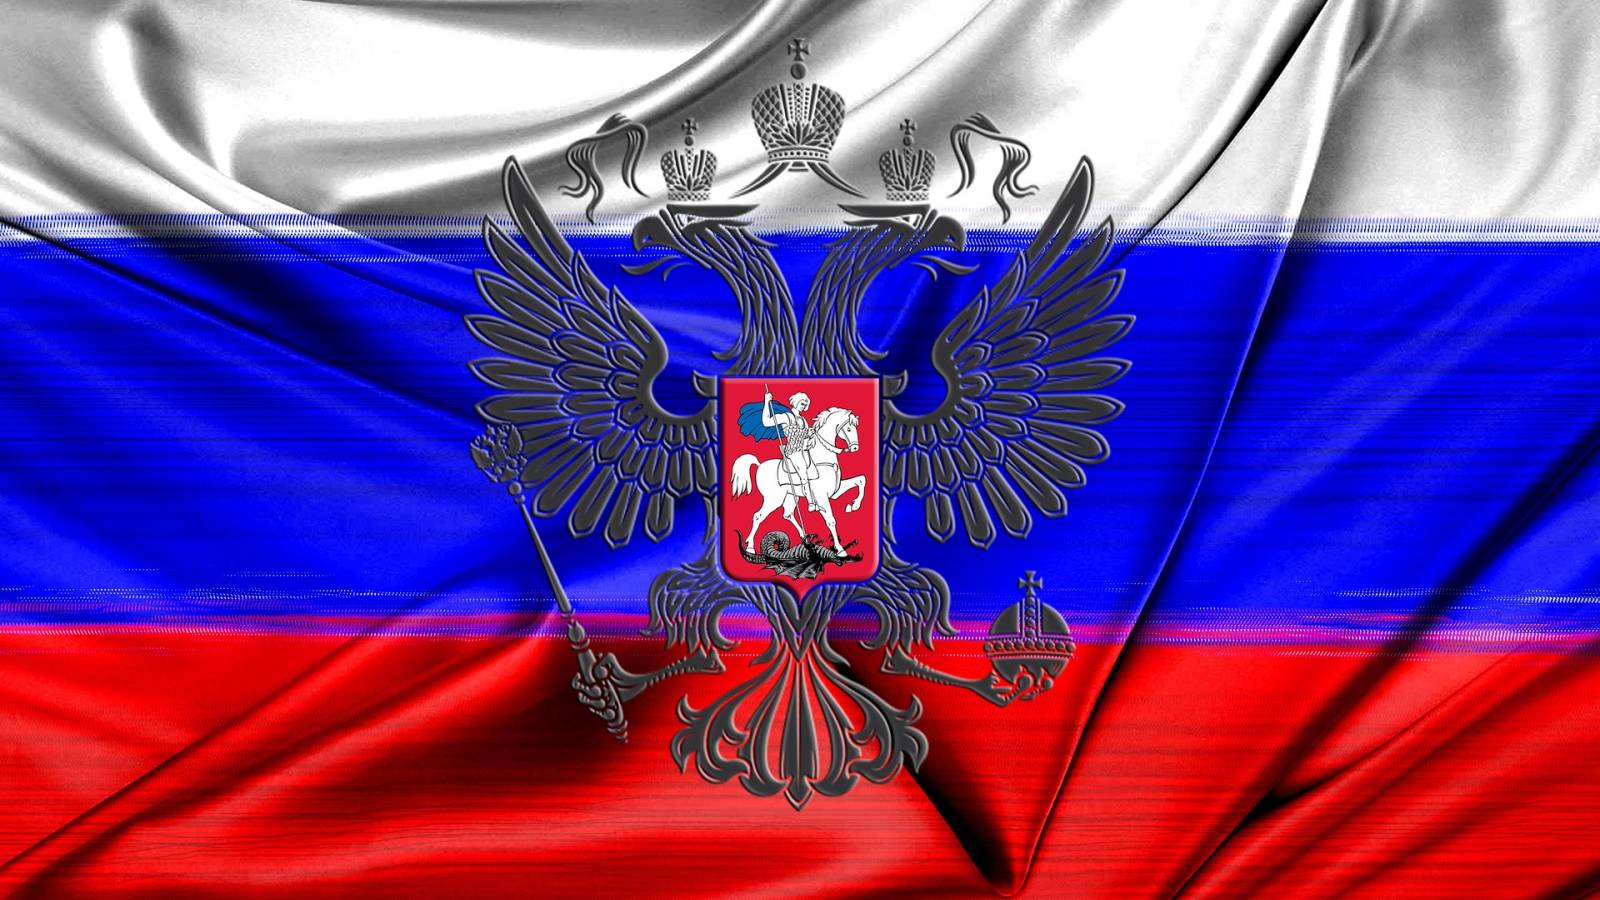 La Russie a conquis de nouveaux territoires L’Ukraine L’objectif majeur imposé à Moscou